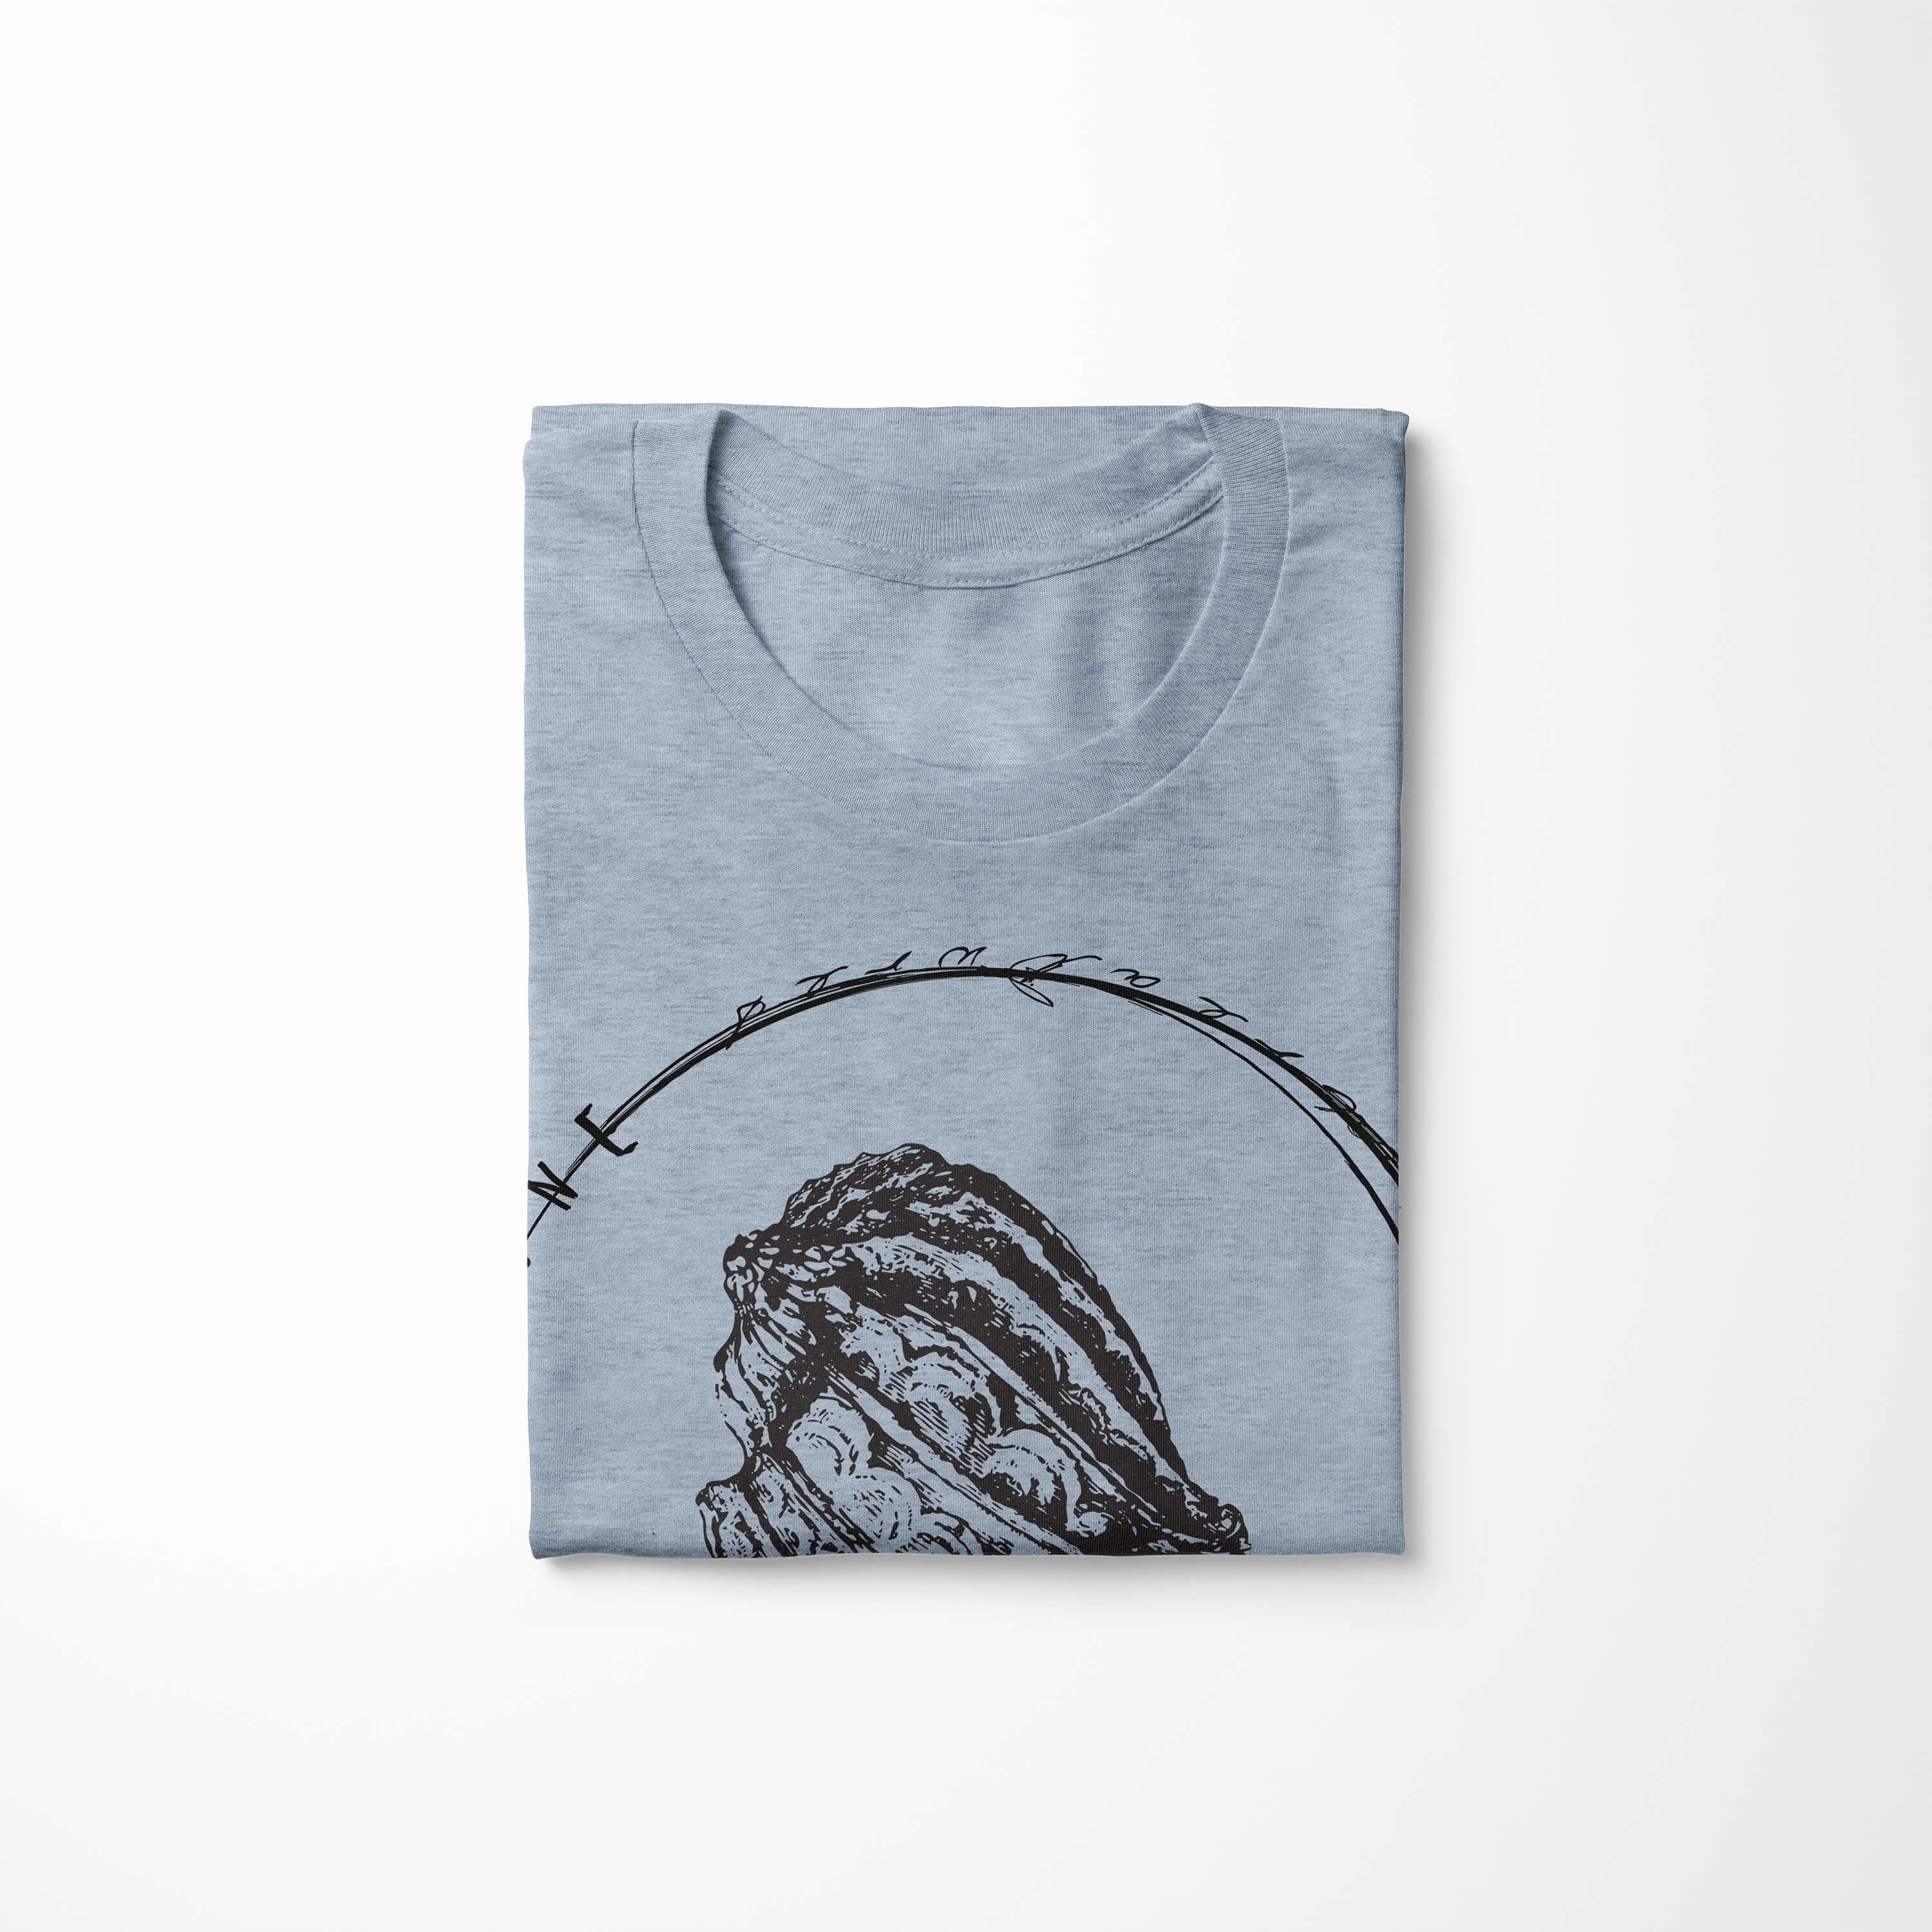 Struktur Denim Fische sportlicher Sinus - Art feine Creatures, T-Shirt / T-Shirt 072 Sea Tiefsee Serie: und Schnitt Stonewash Sea